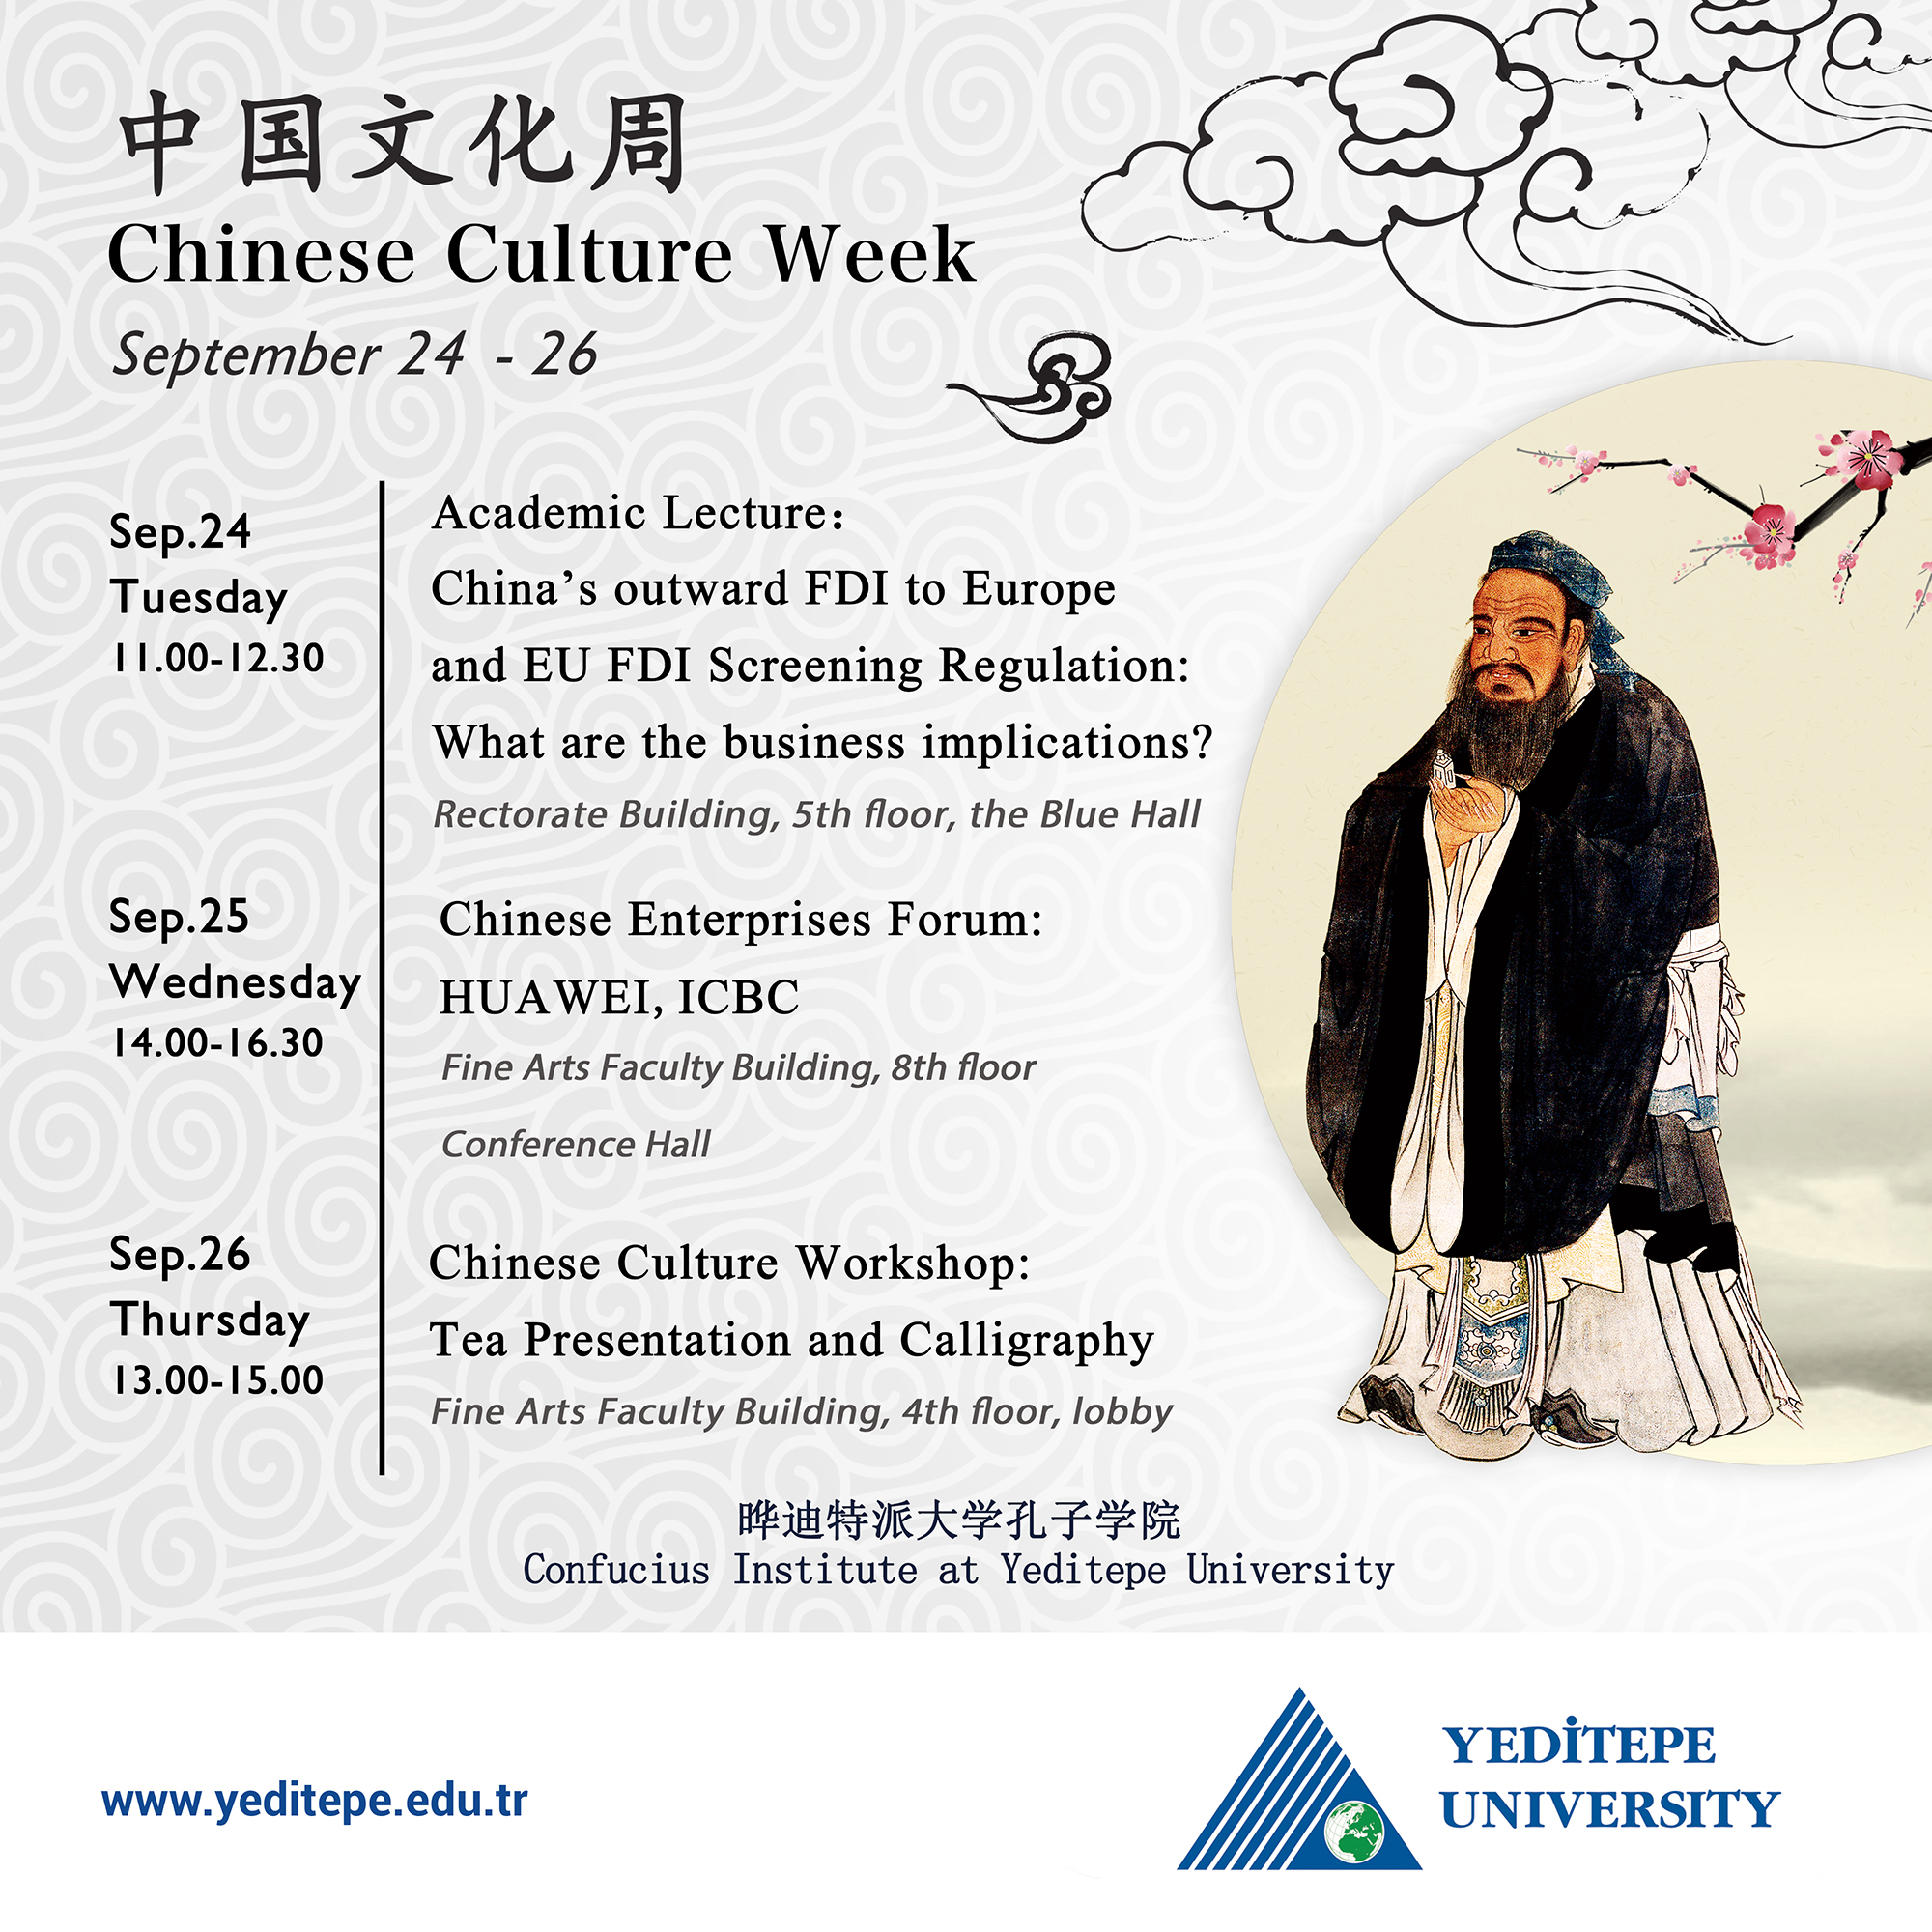 Confucius Institute - Chinese Culture Week